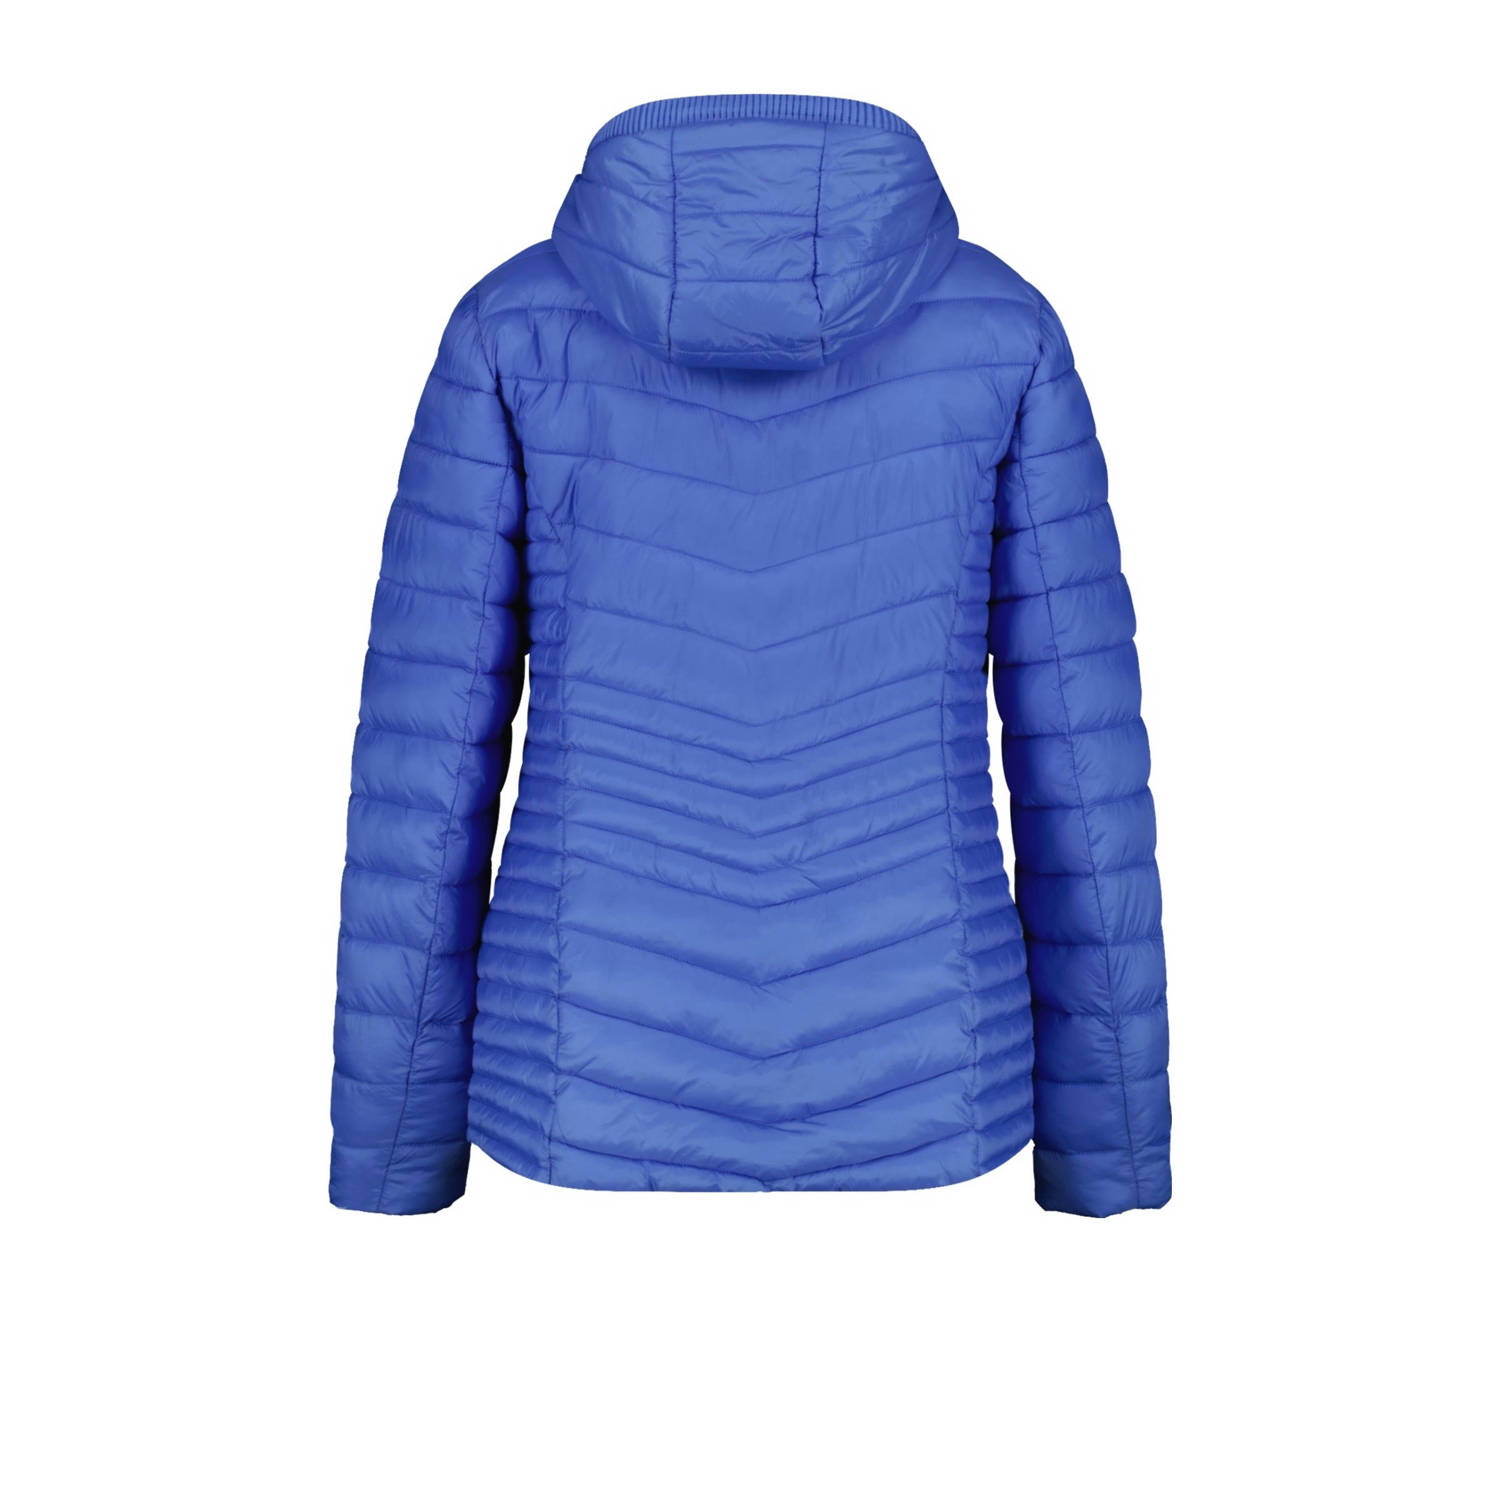 MS Mode licht gewatteerde jas blauw